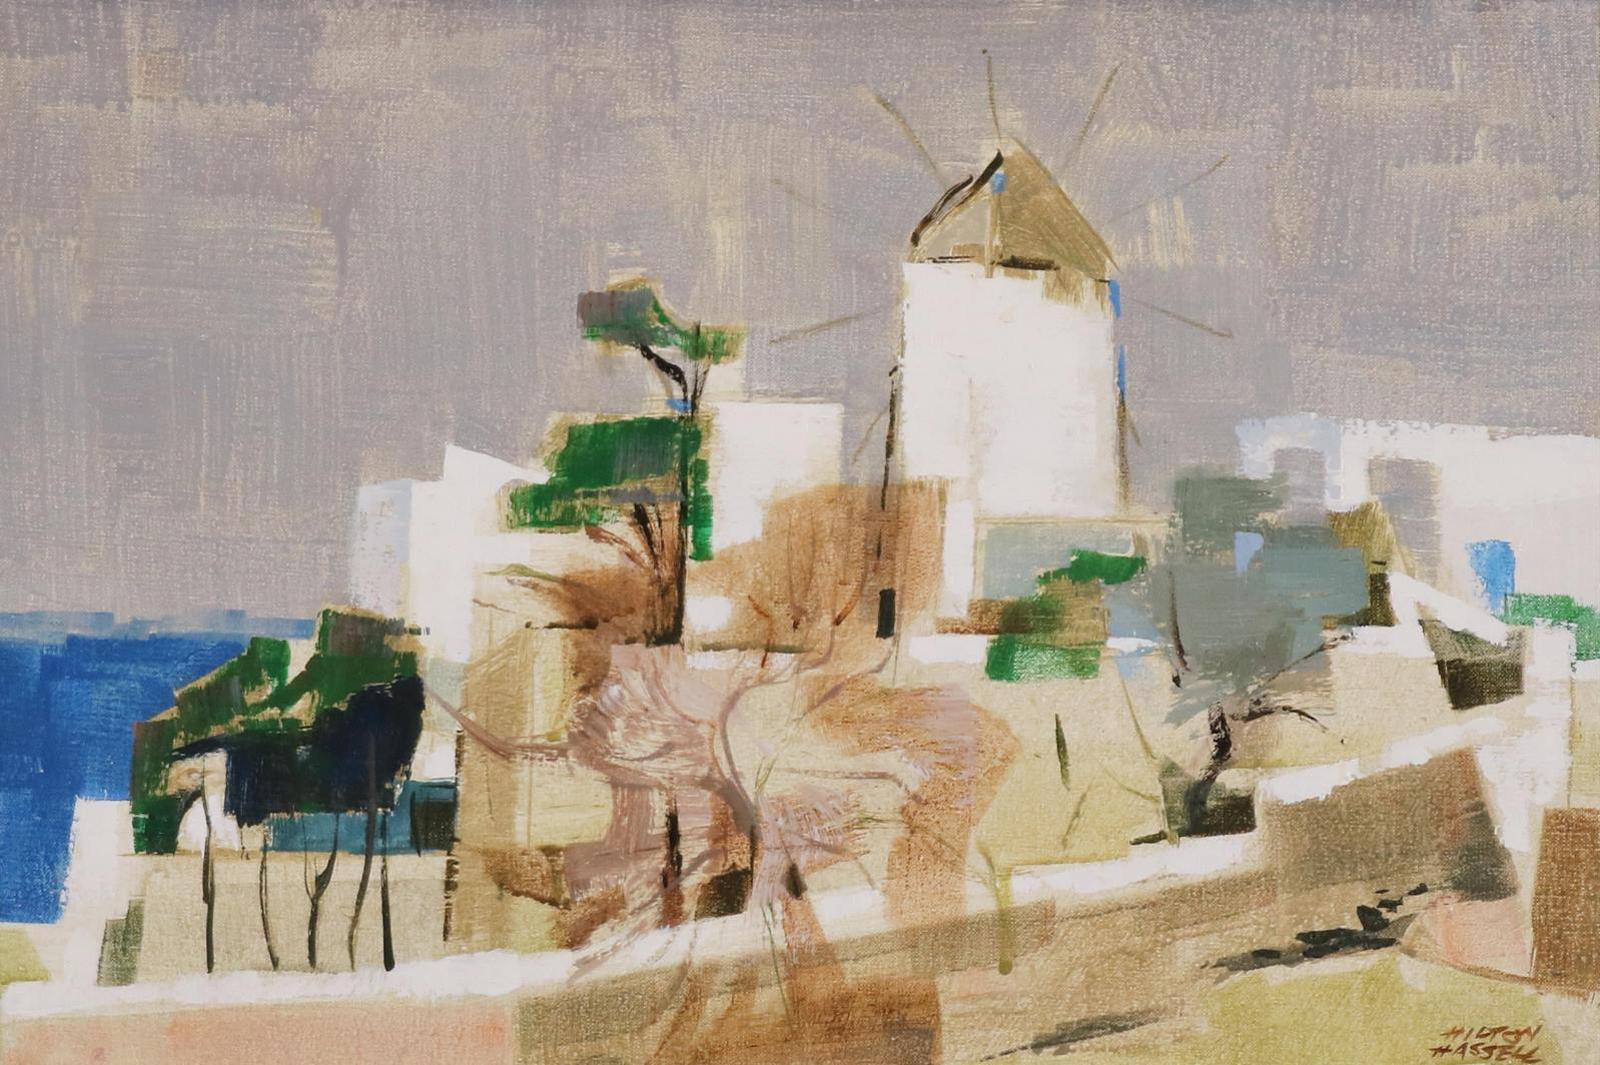 Hilton MacDonald Hassell (1910-1980) - Mediterranean Windmill, Mykonos, Greek Isles; 1969